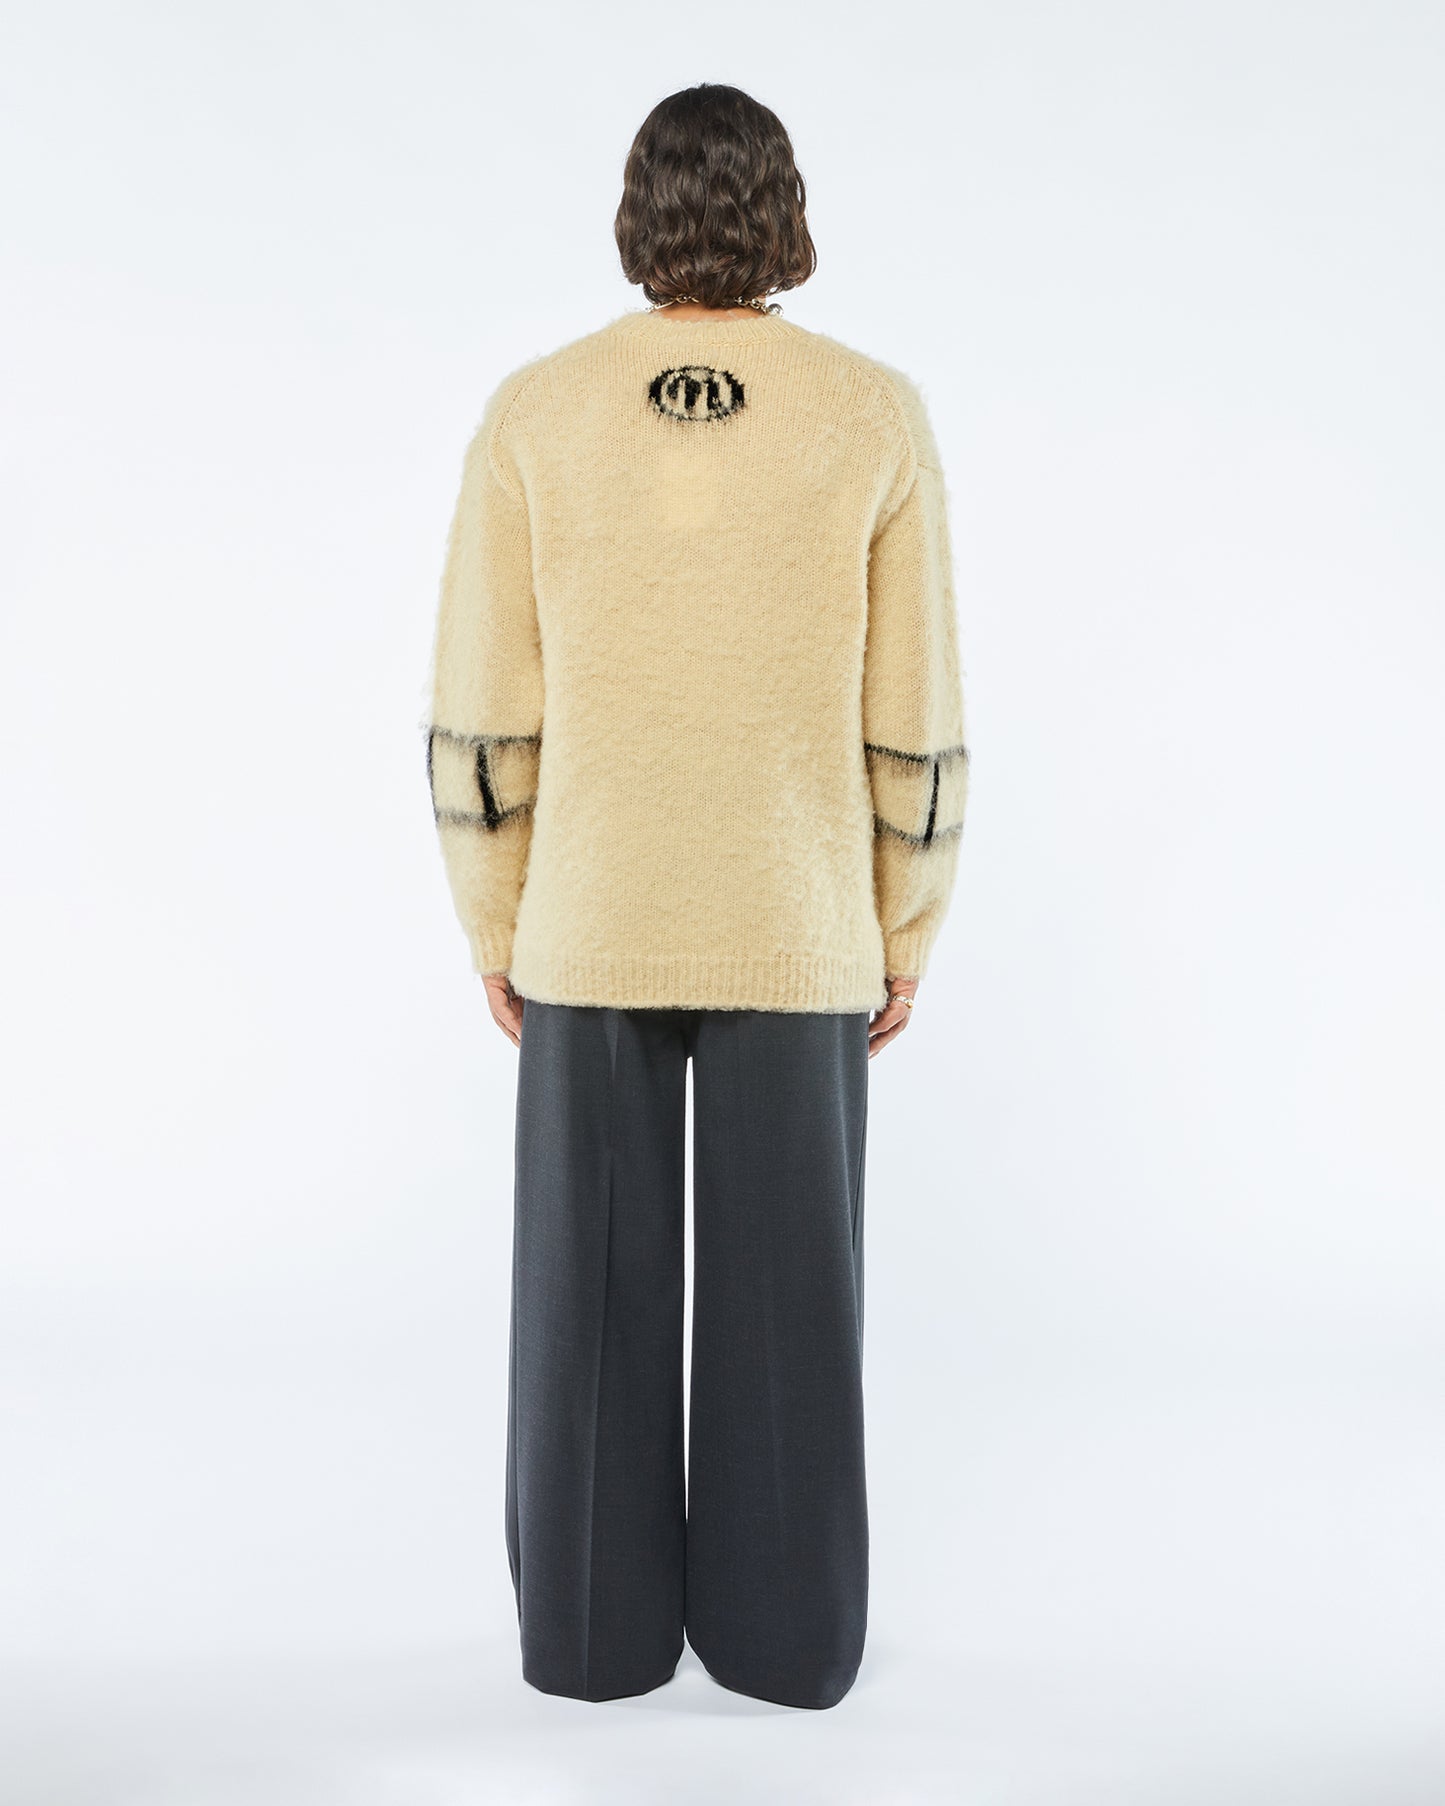 Destin - Brushed Merino Wool Sweater - Vintage CremeBlack